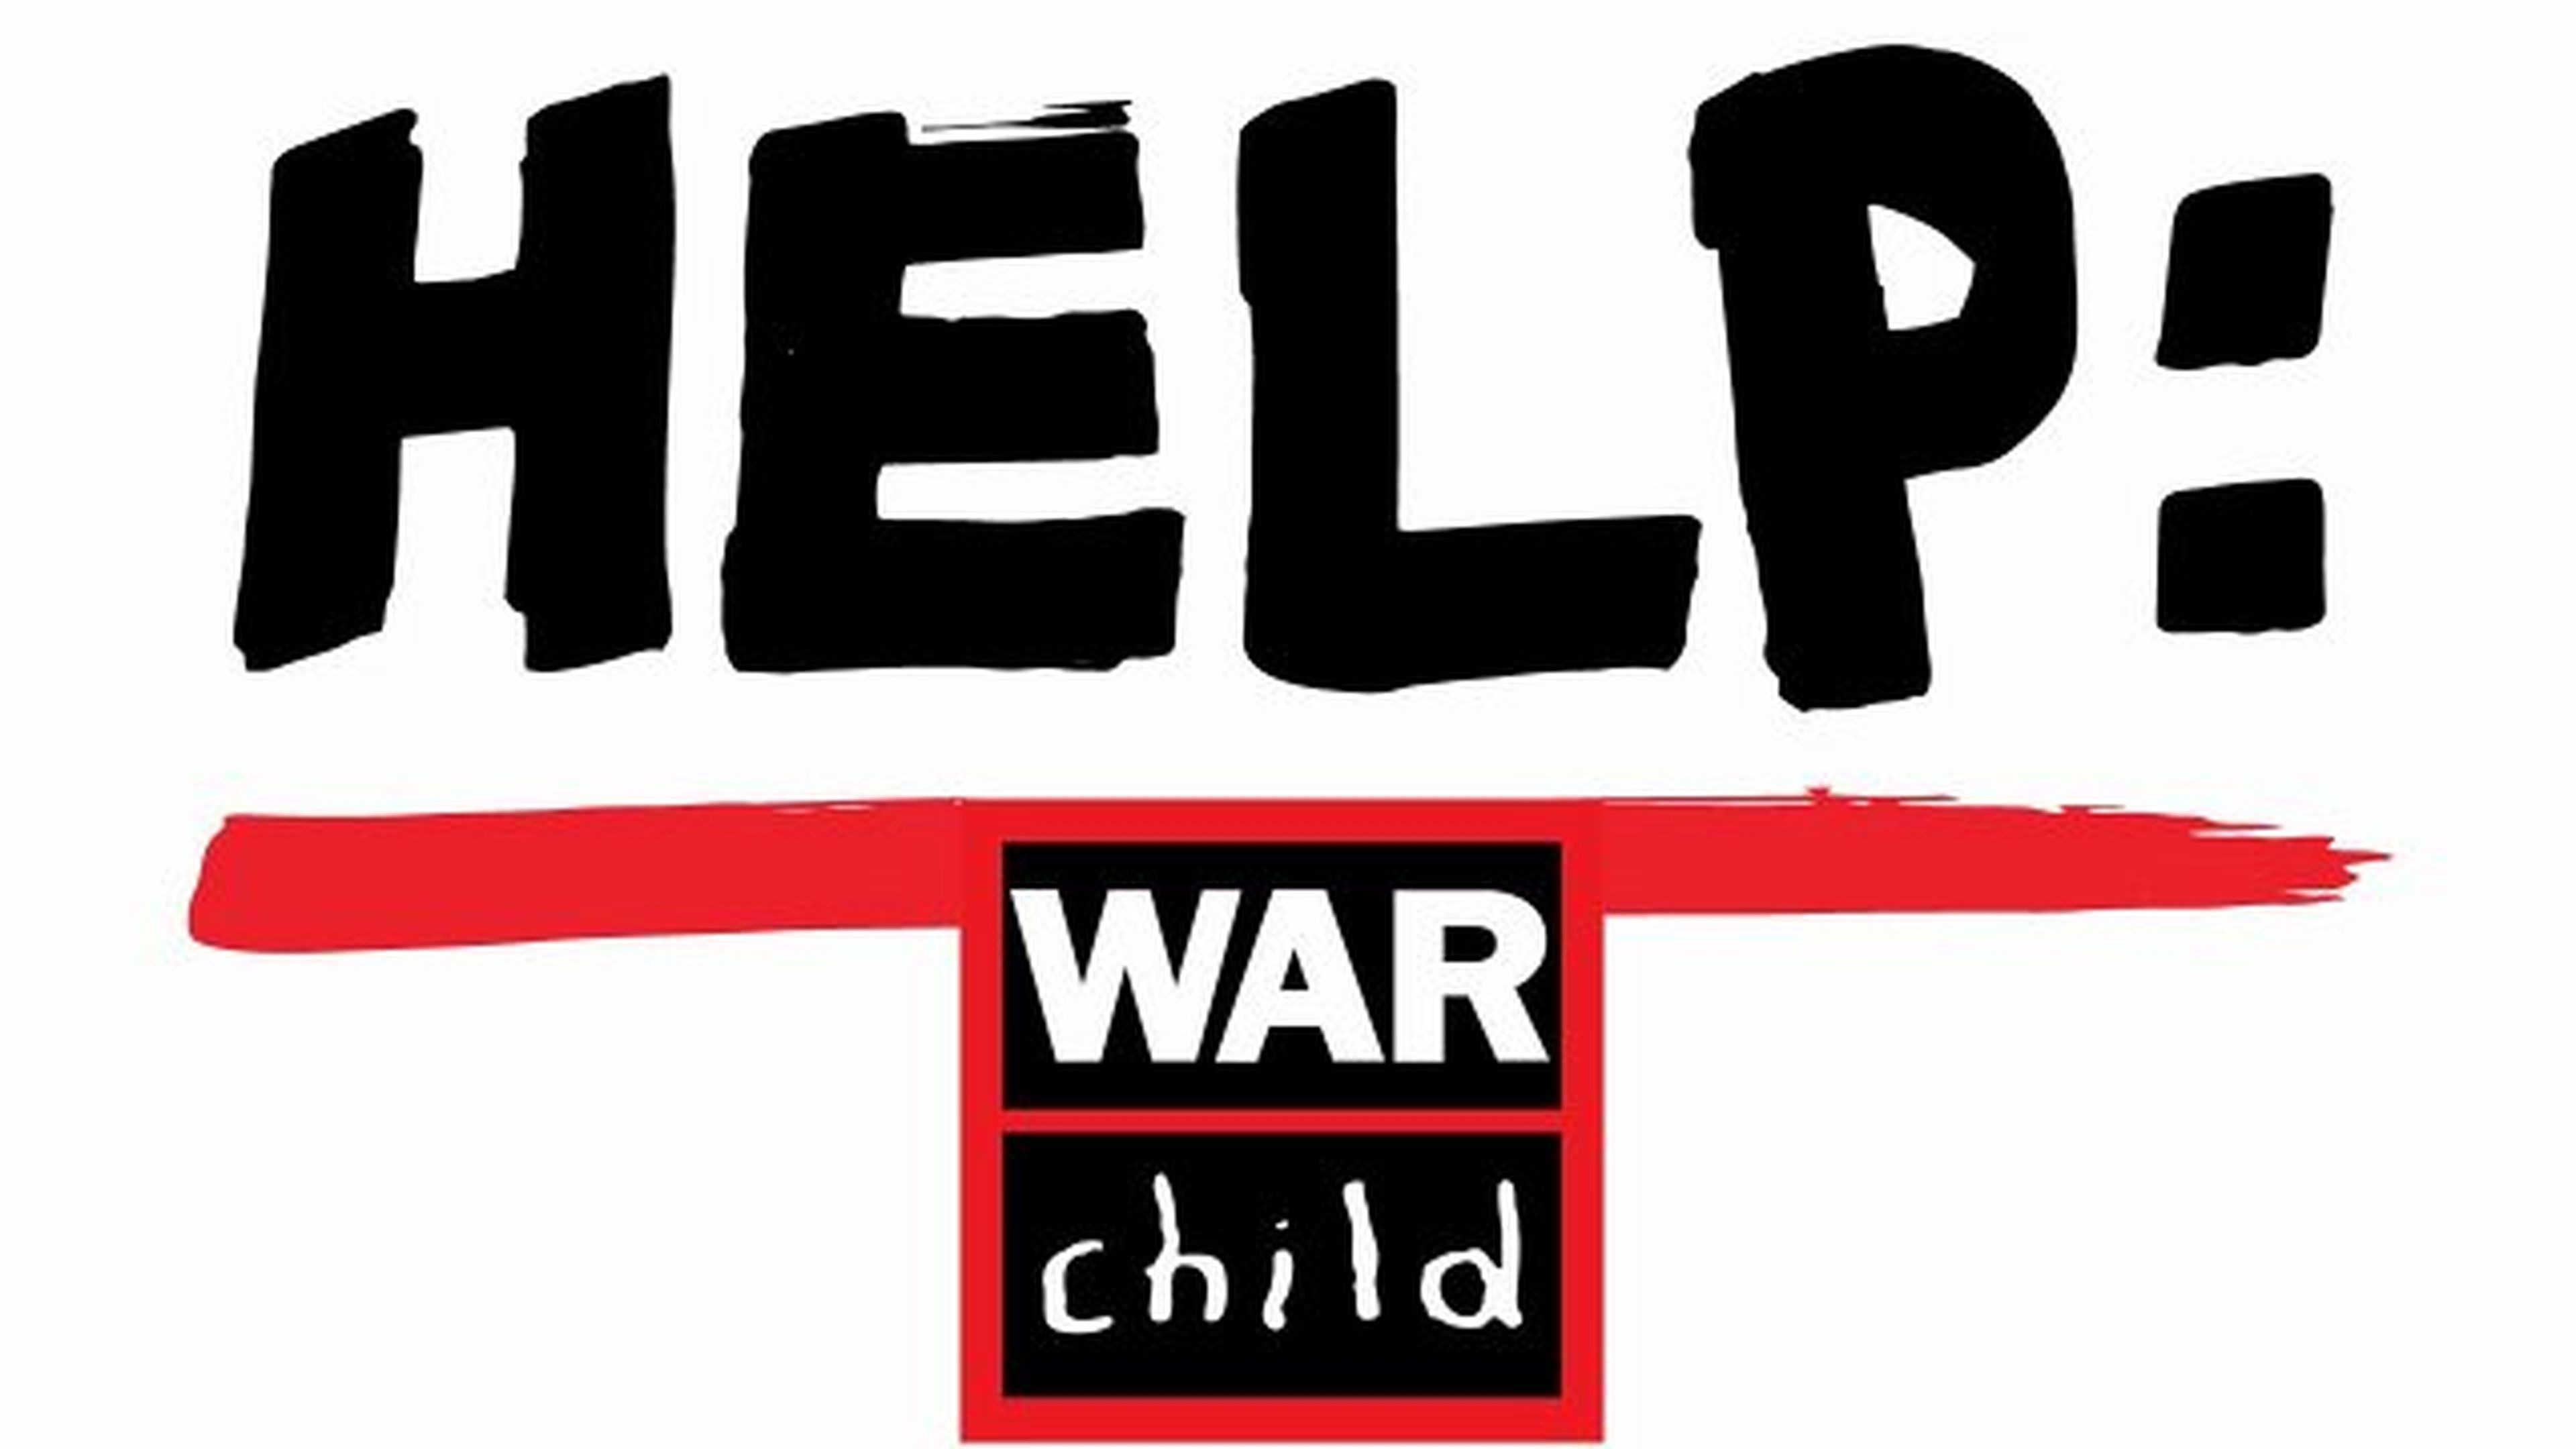 Estudios de videojuegos de todo el mundo se unen para ayudar a los niños víctimas de guerra